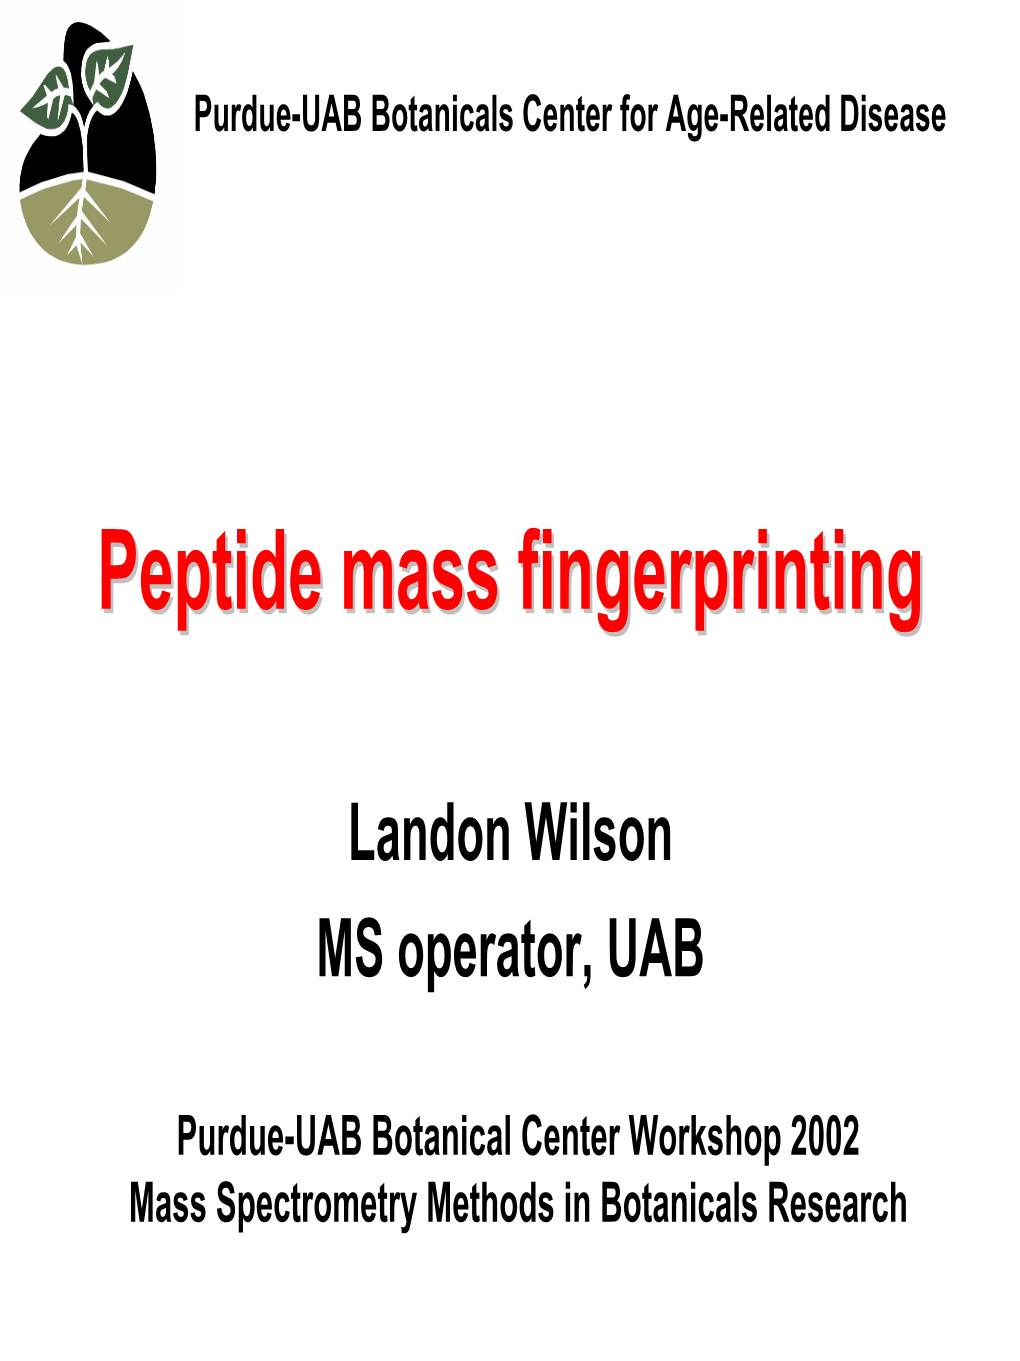 Peptide Mass Fingerprinting